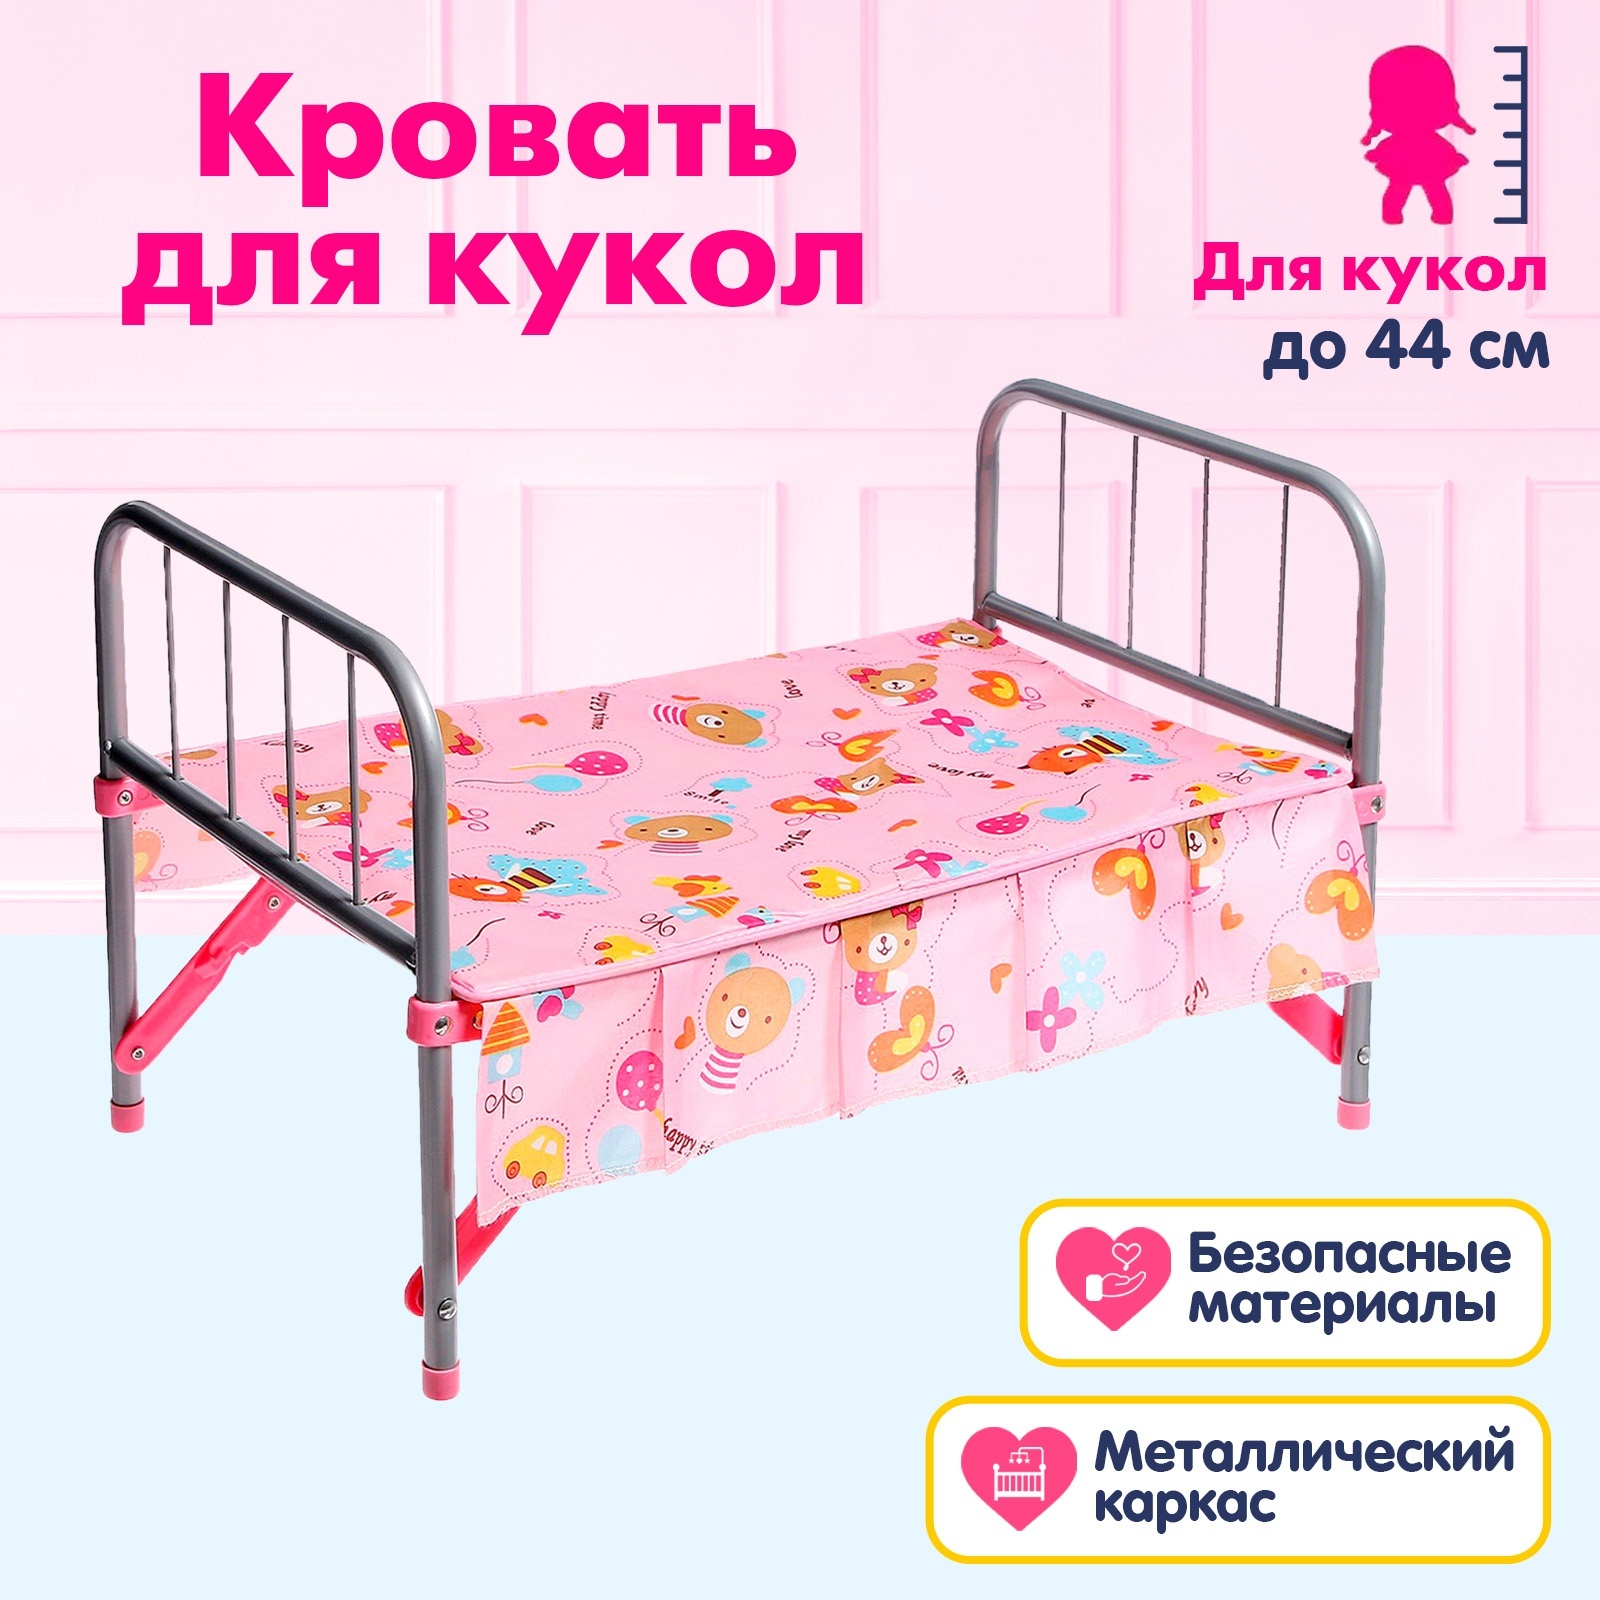 Кровать для куклы №6 СПб. купить в Казани - интернет магазин Rich Family